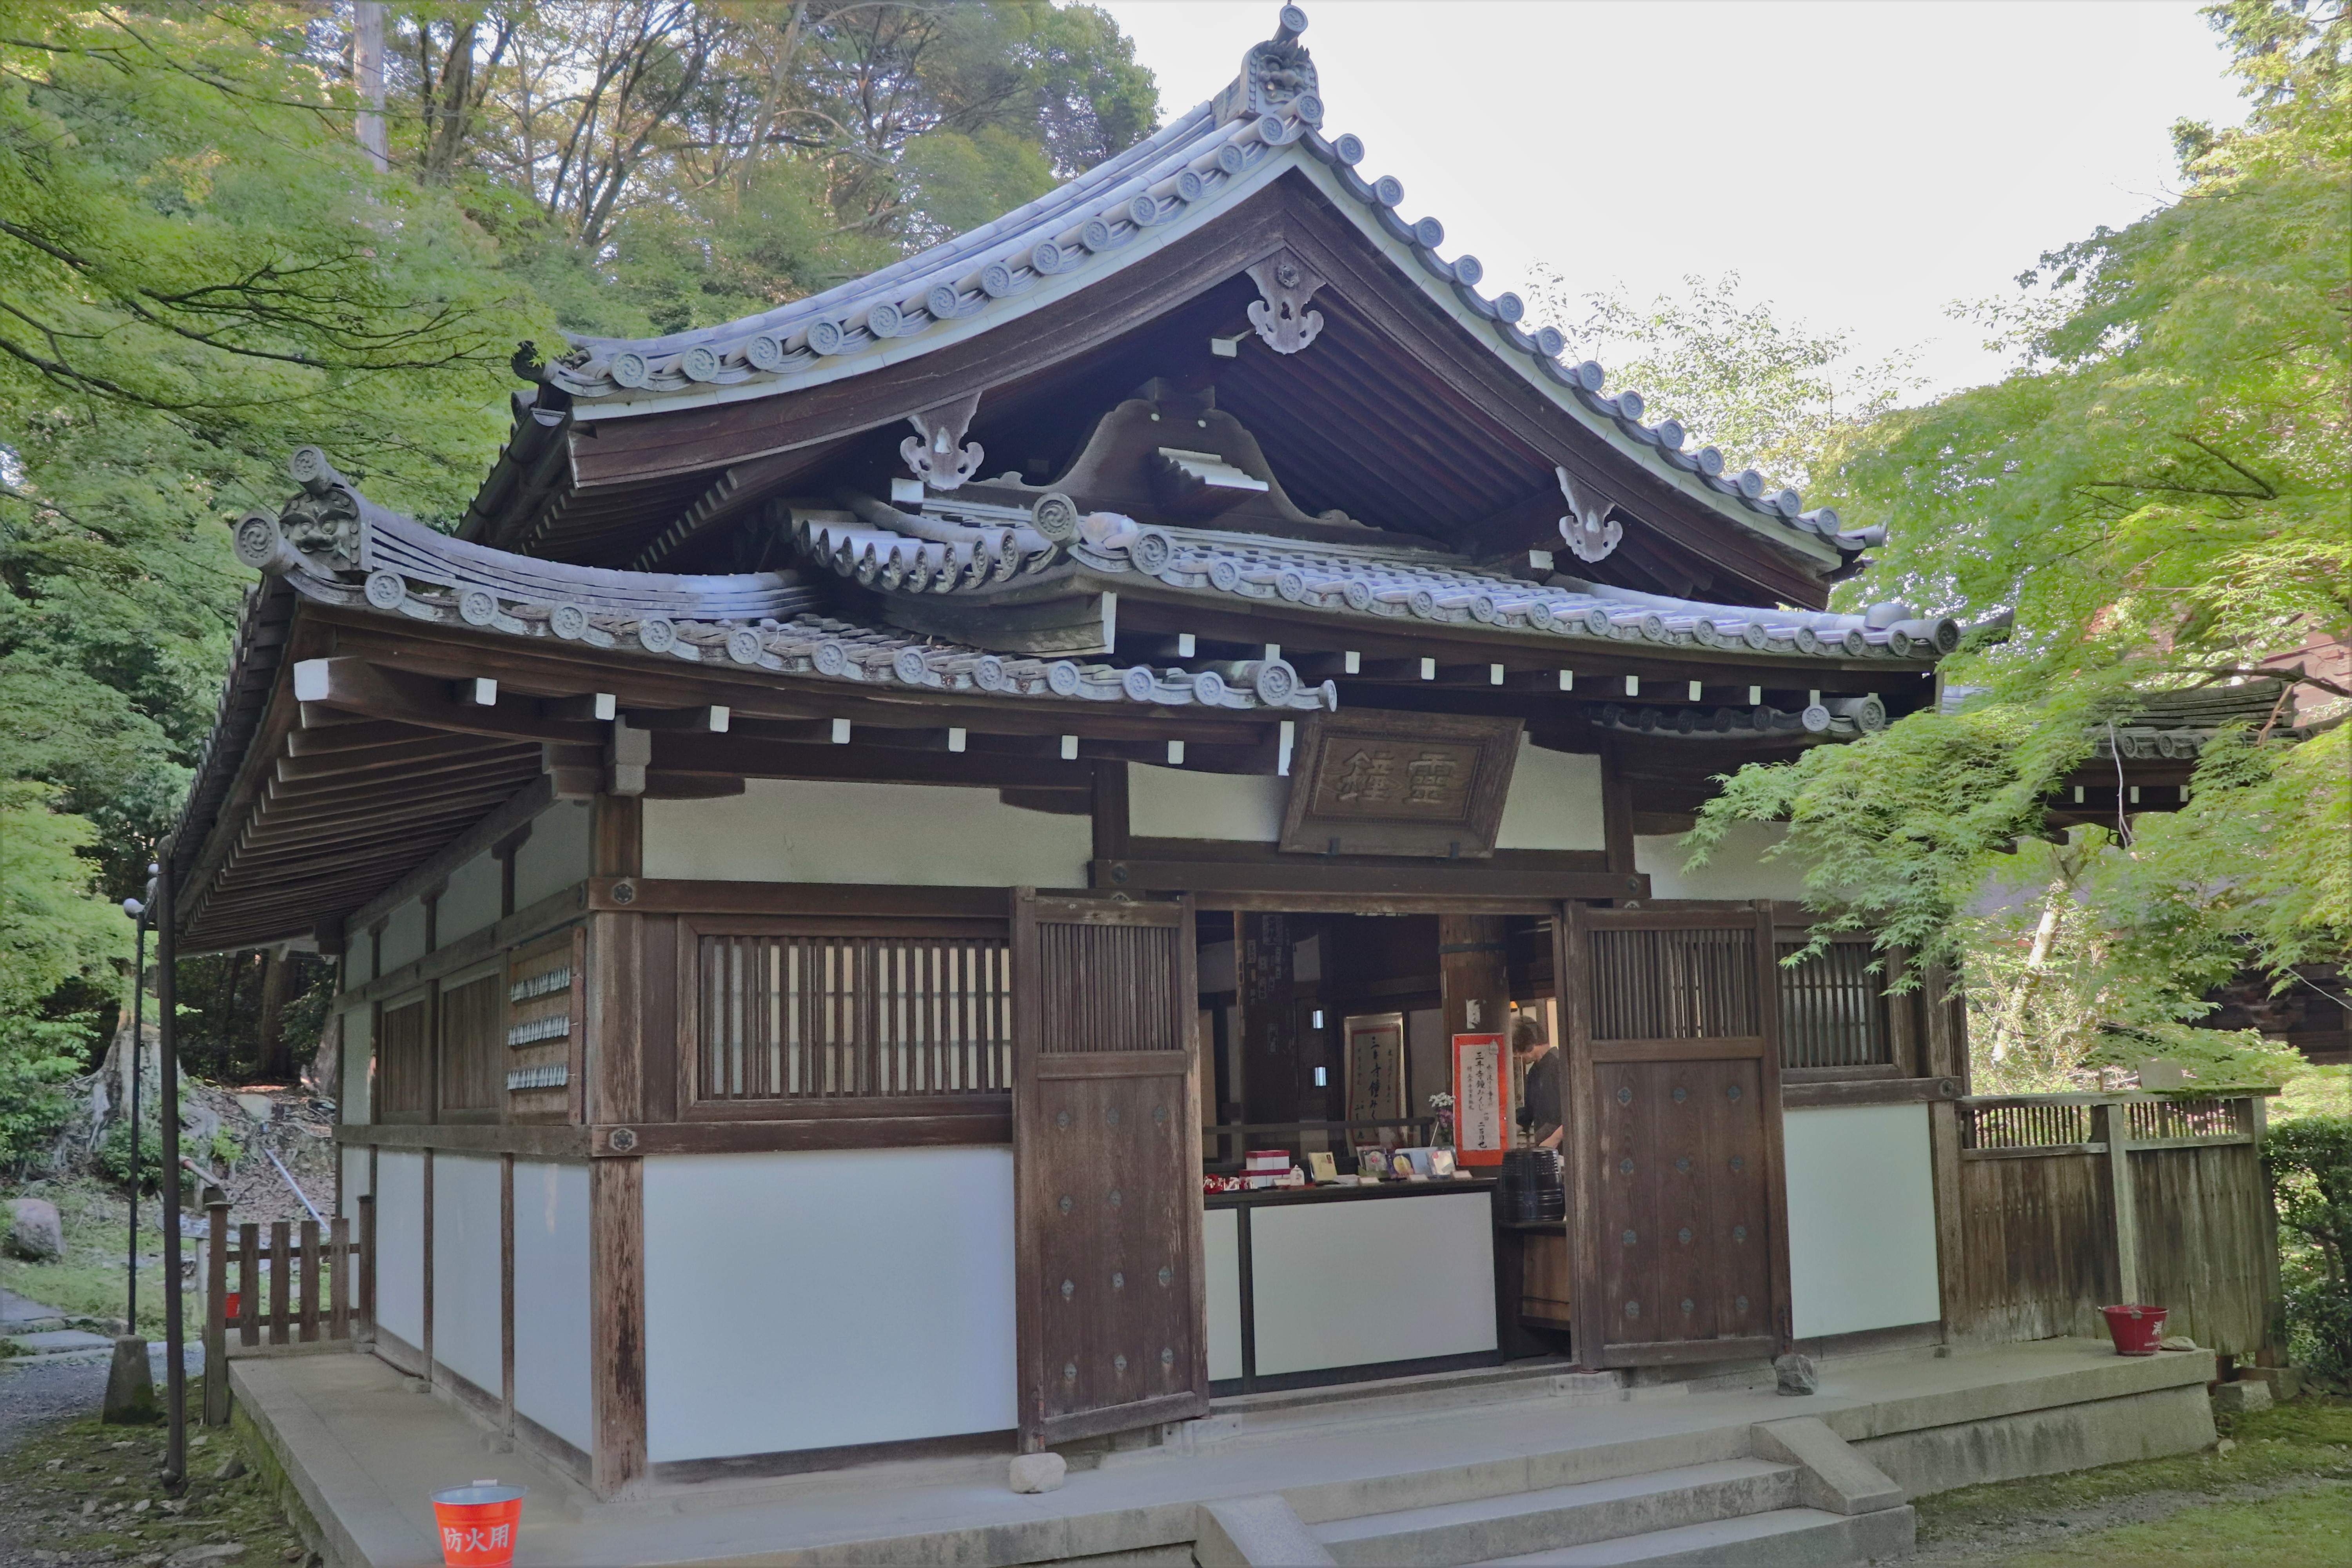 back of the Reishodo at Mii-dera